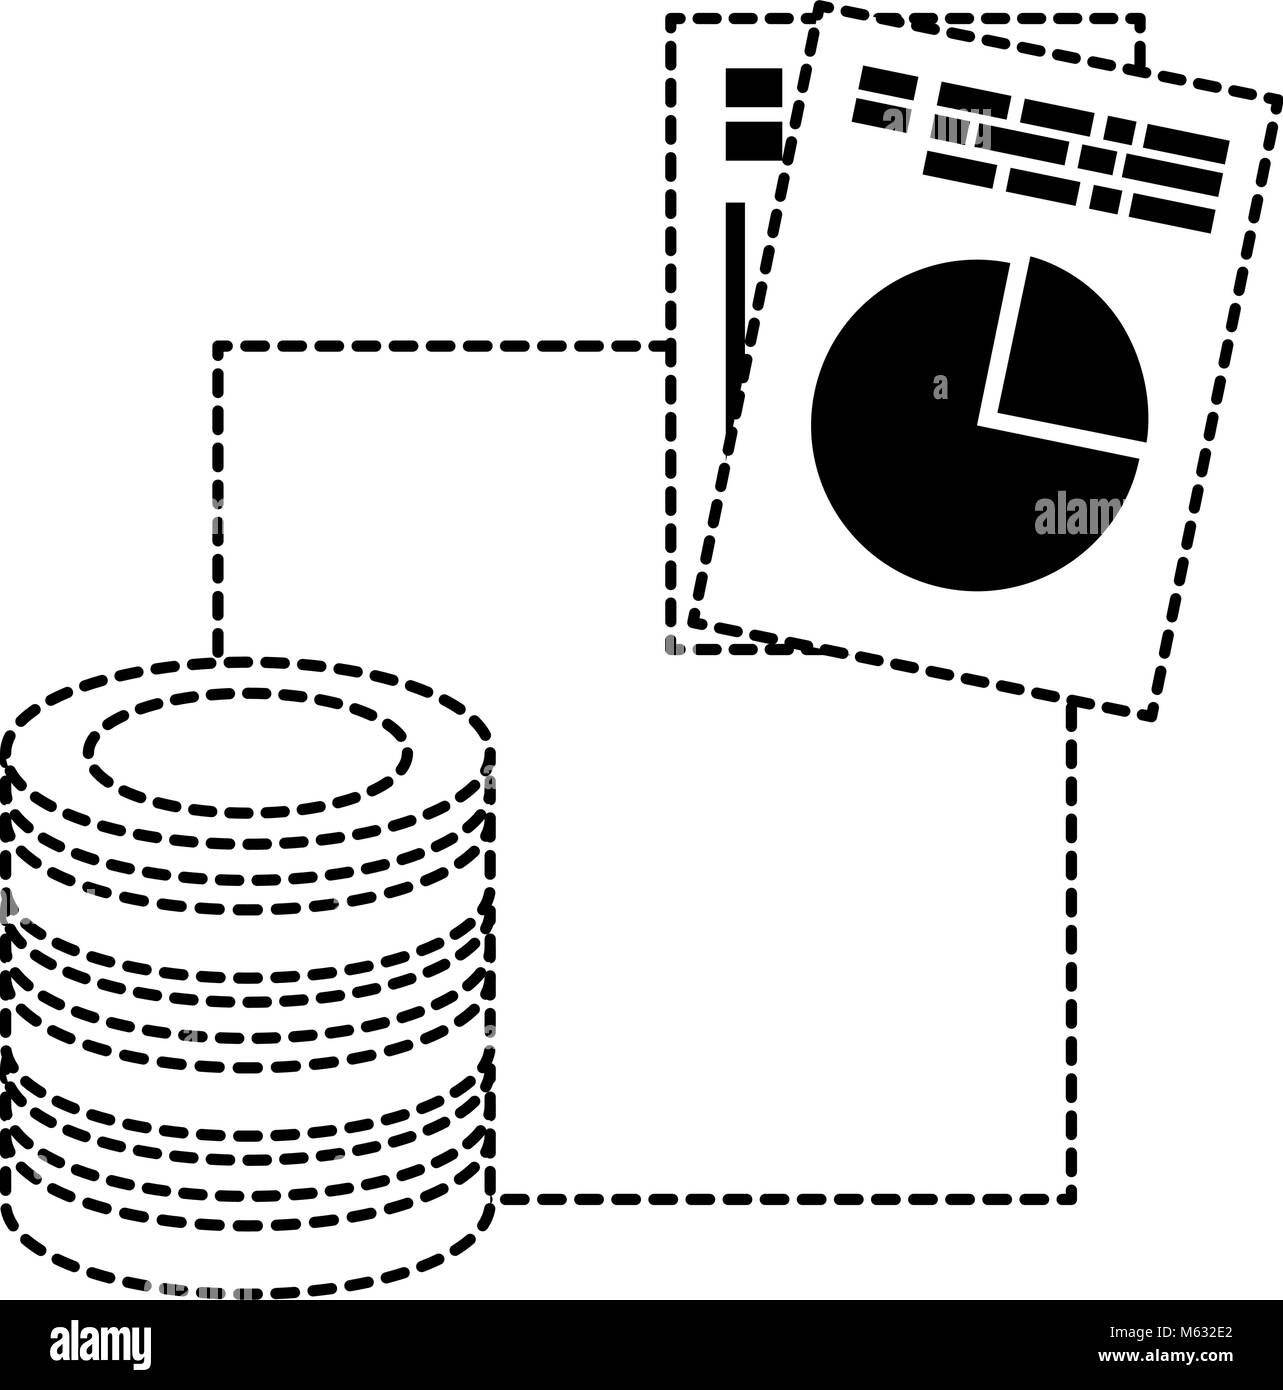 Disque de centre de données avec les documents de conception d'illustration vectorielle Illustration de Vecteur